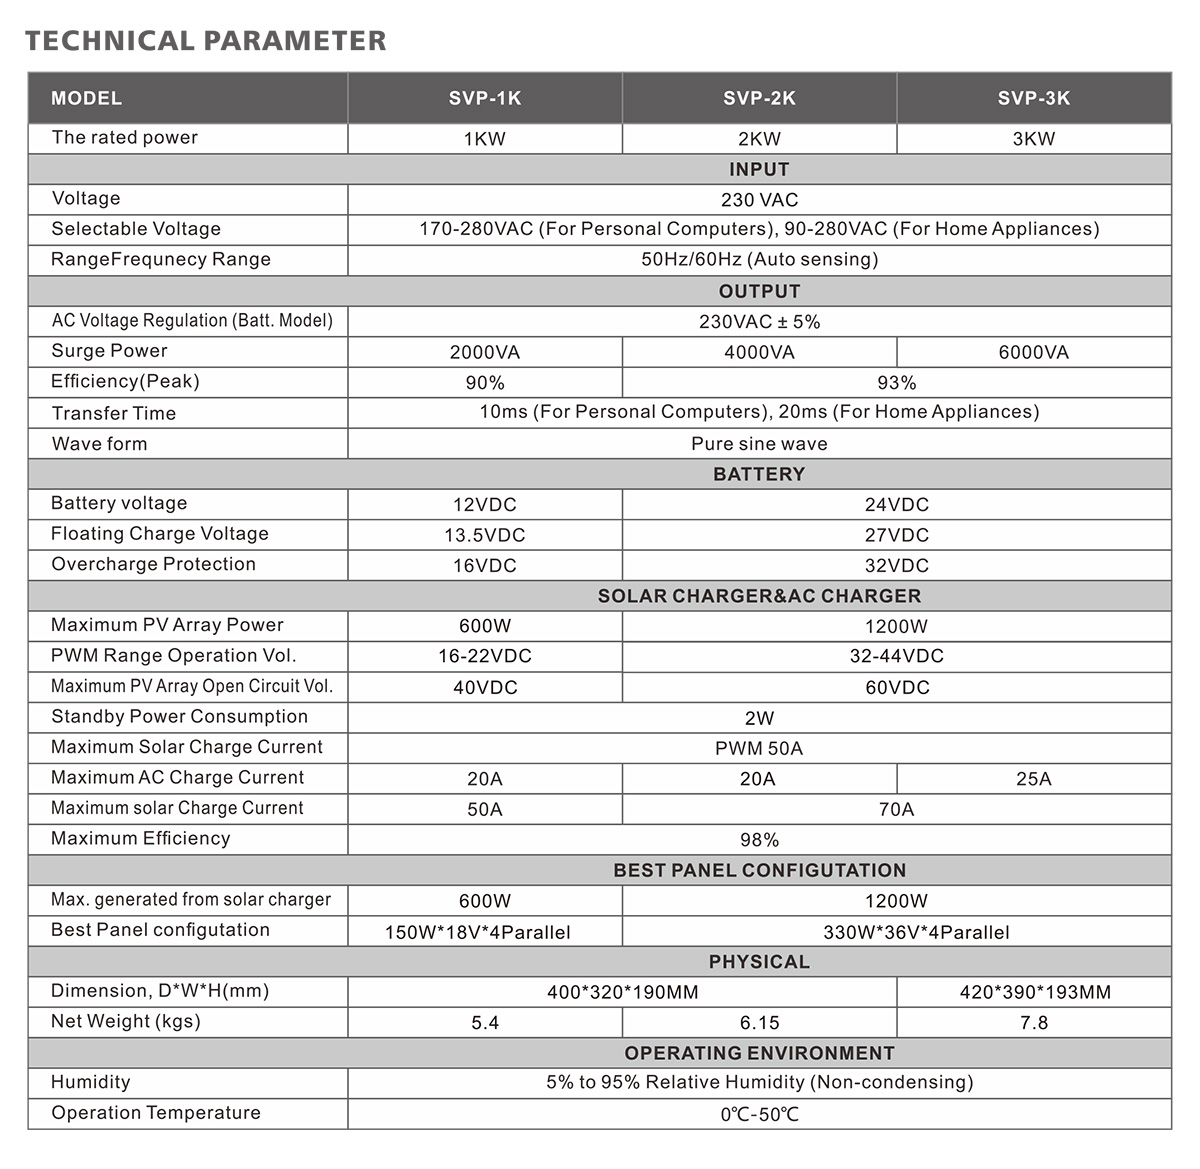 SVP-3K Technical Data